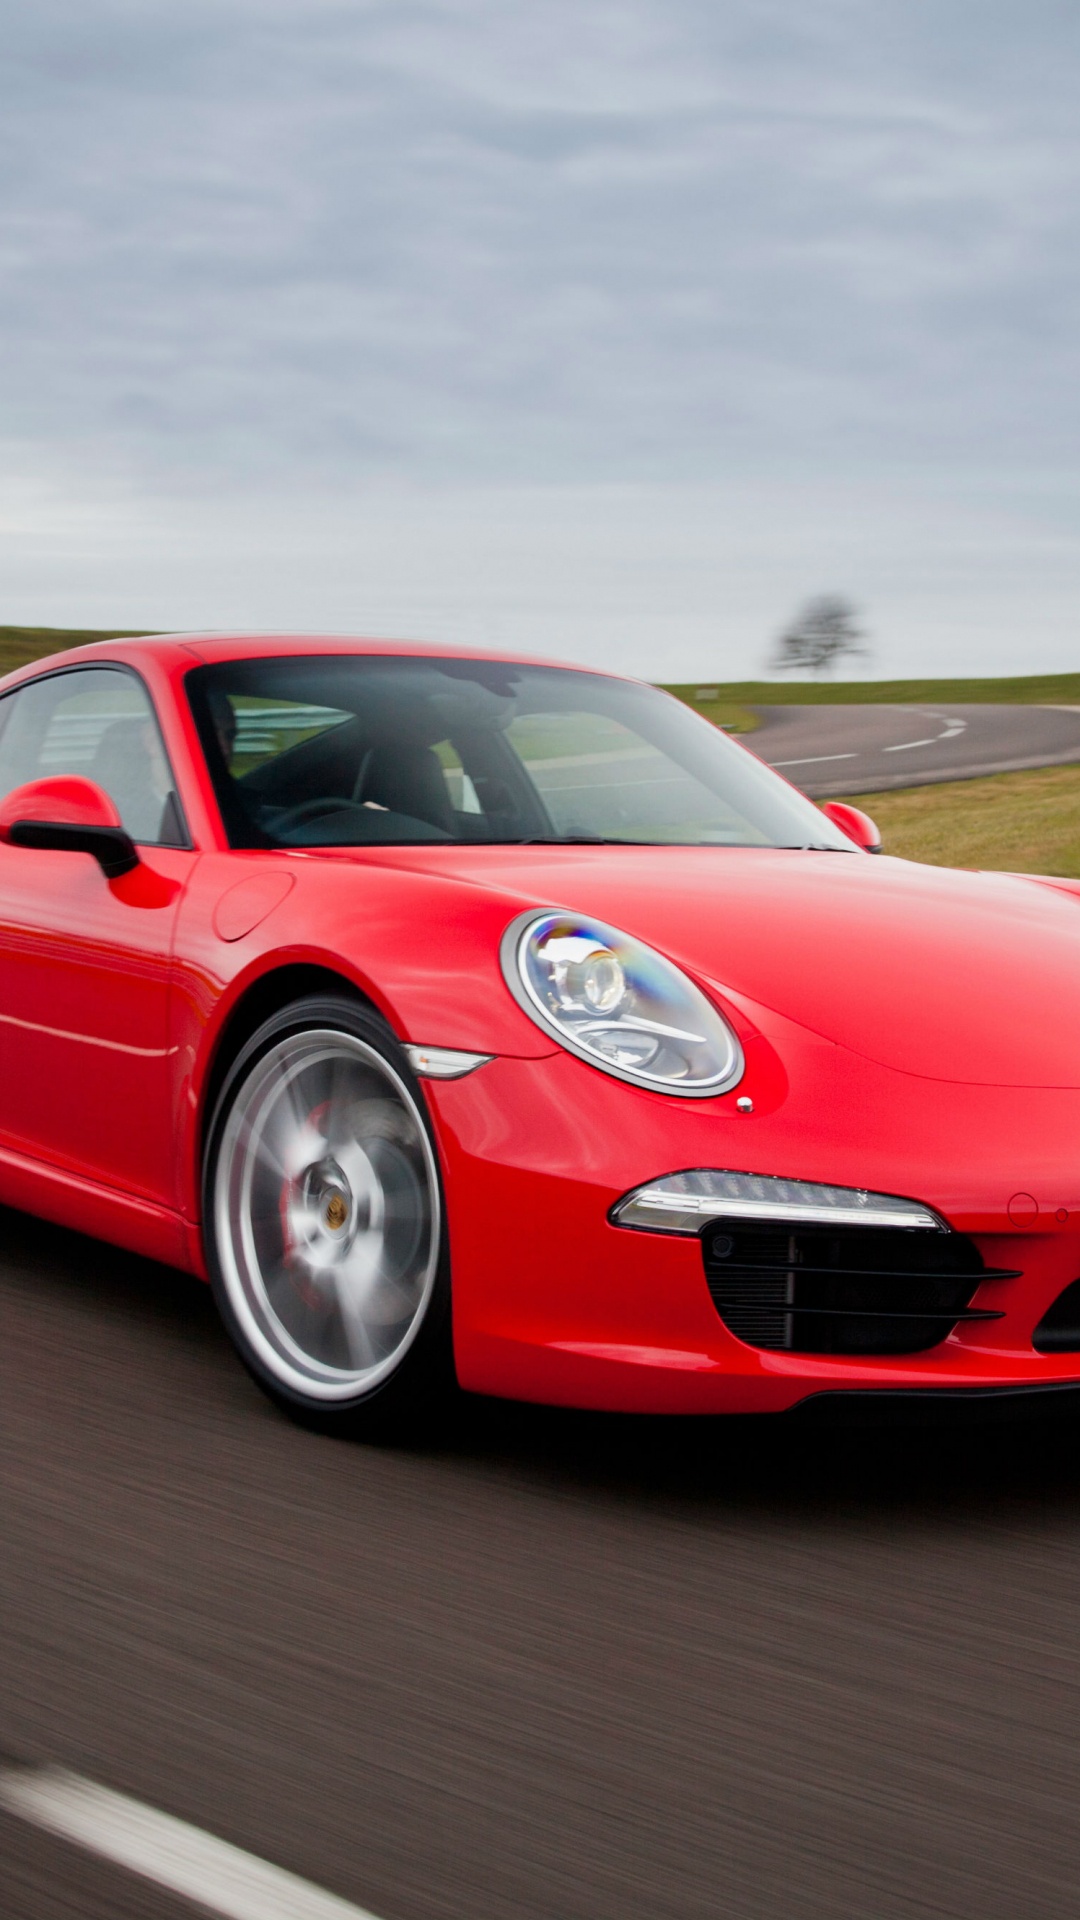 Porsche 911 Rojo en la Carretera Durante el Día. Wallpaper in 1080x1920 Resolution